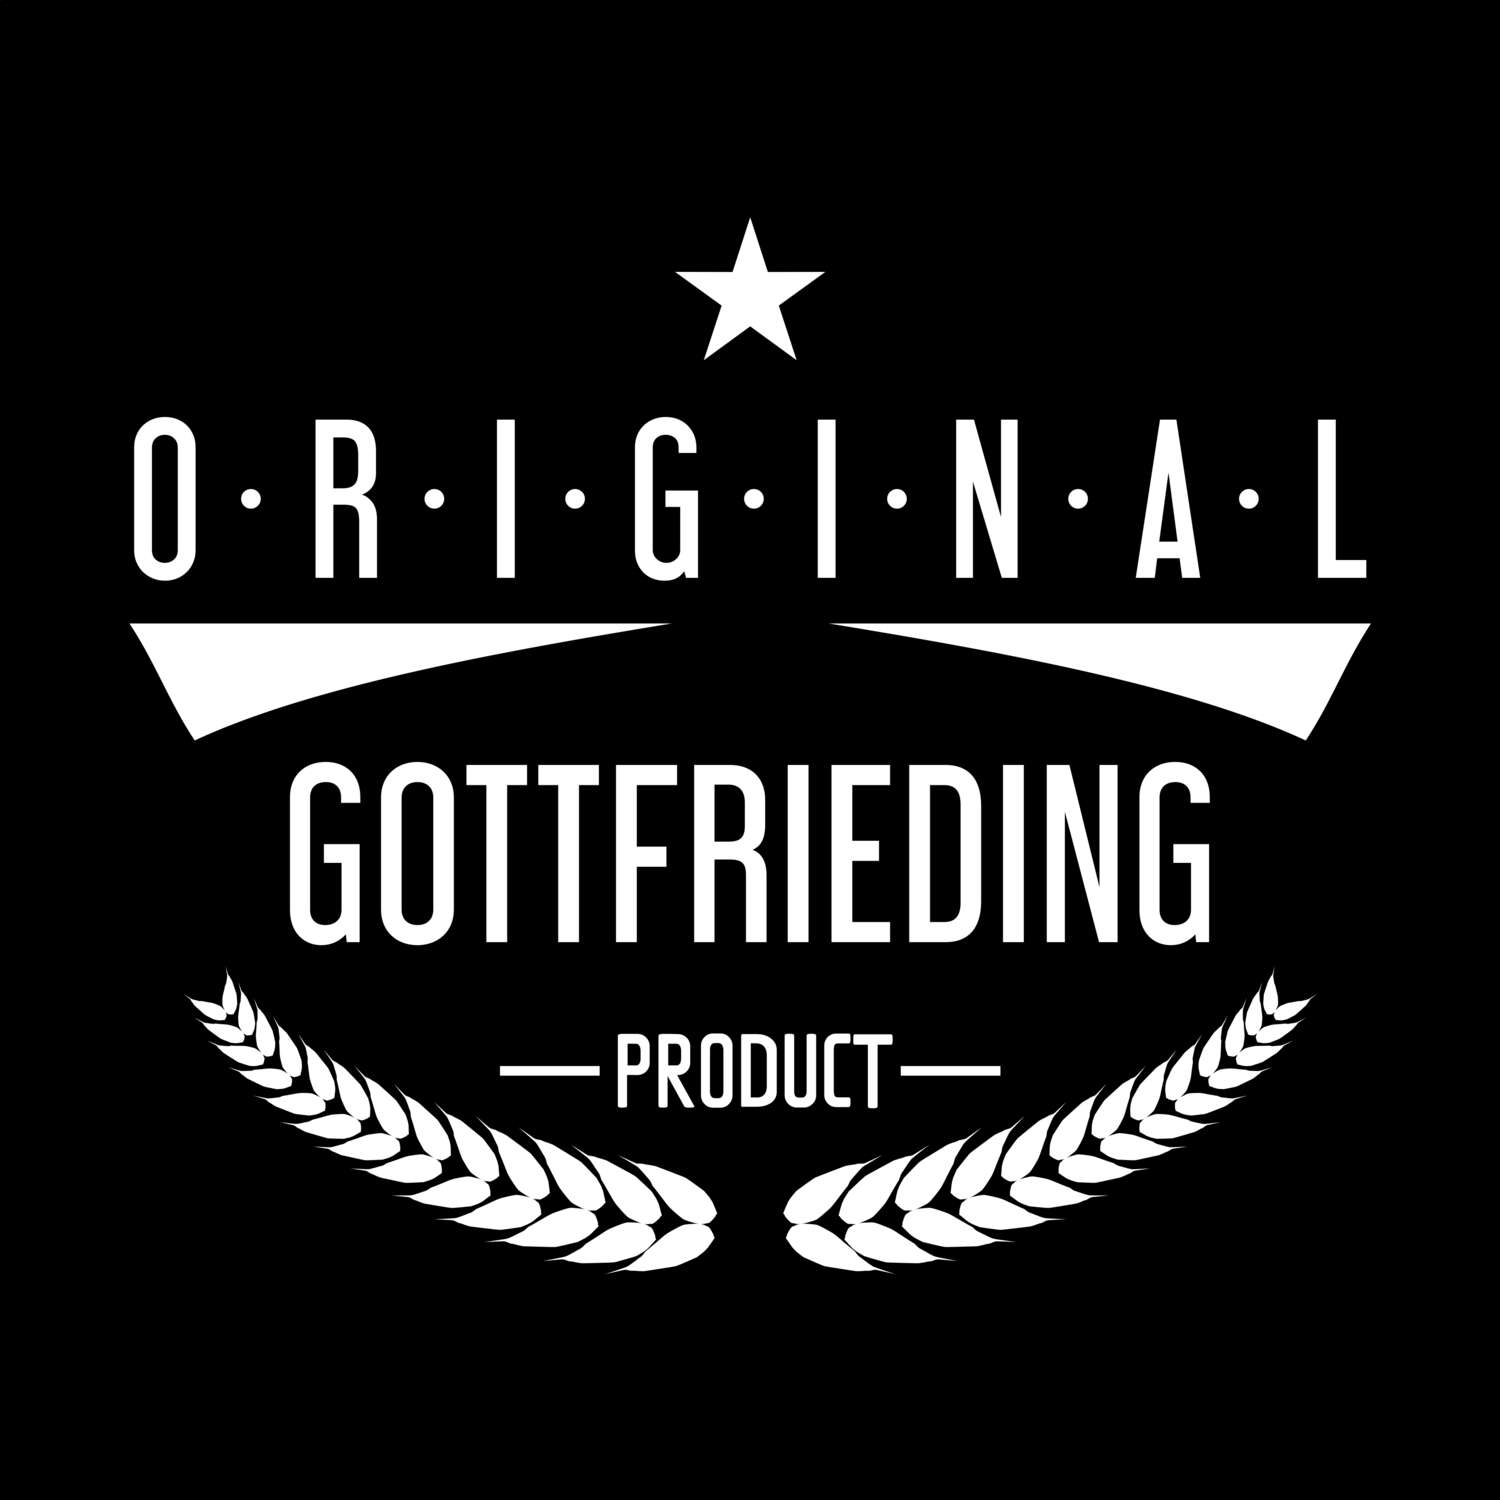 Gottfrieding T-Shirt »Original Product«